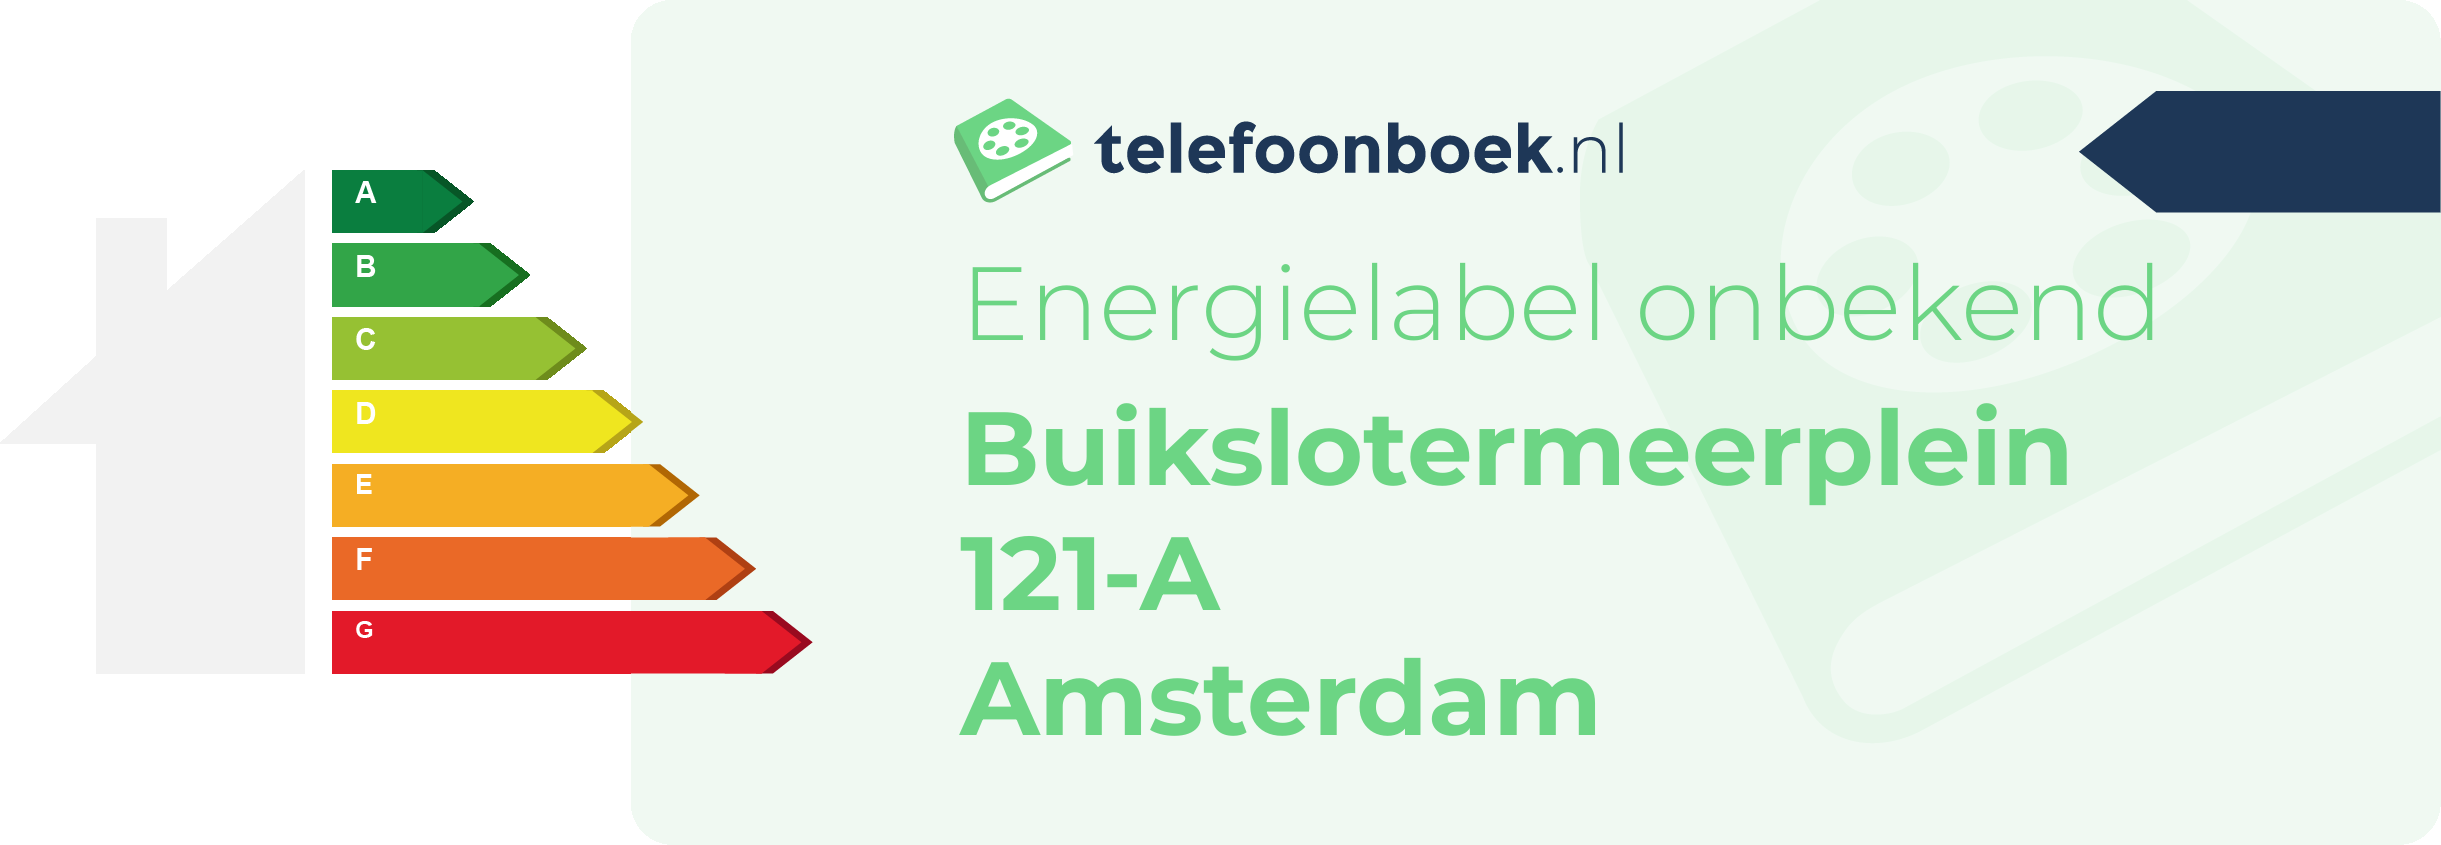 Energielabel Buikslotermeerplein 121-A Amsterdam